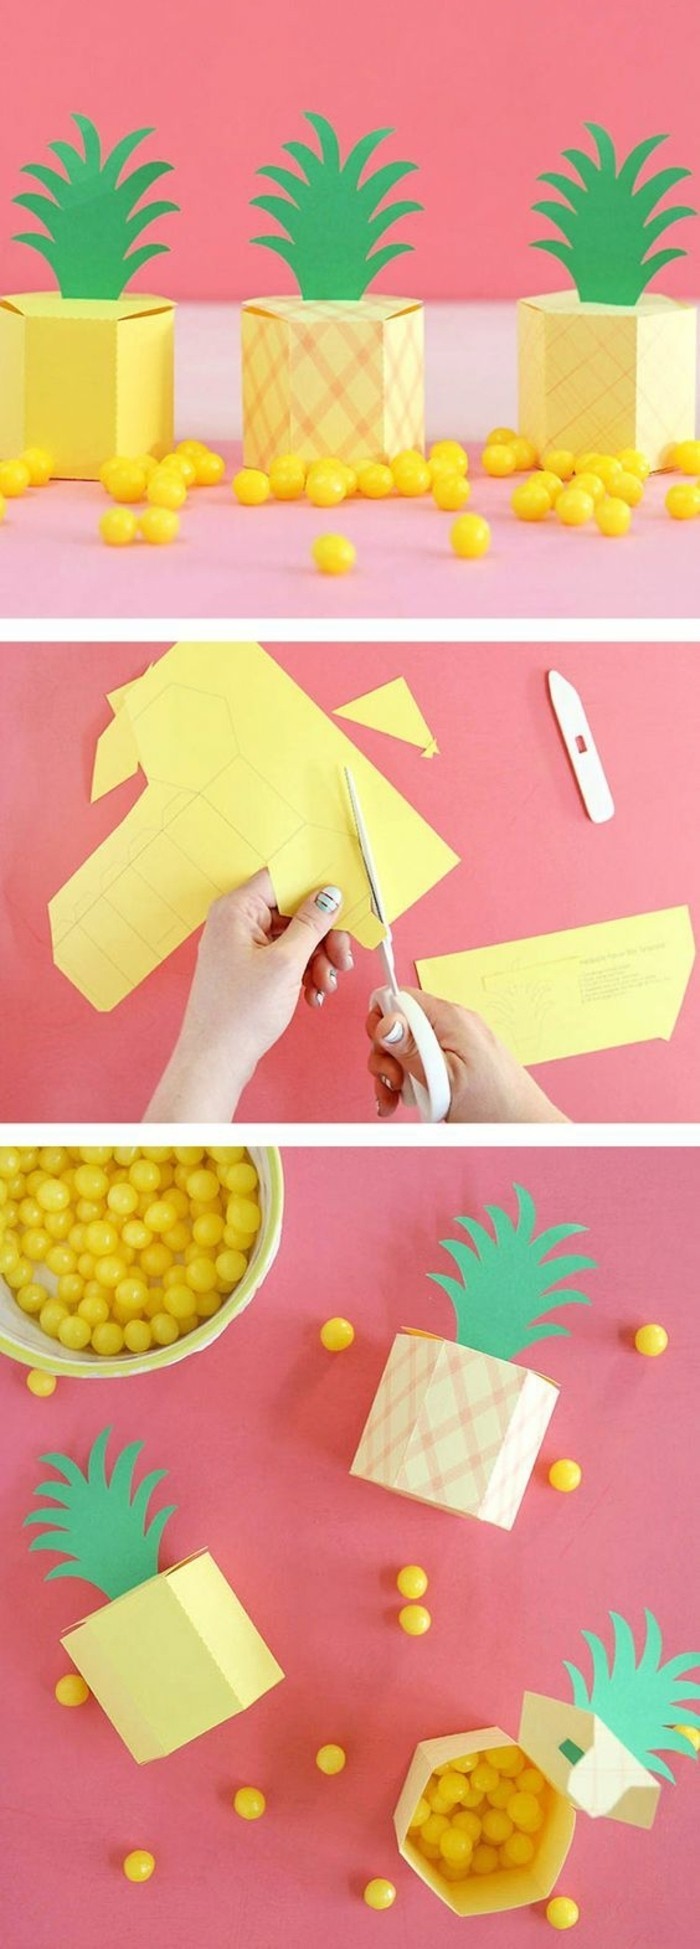 boite-origami-en-forme-d-ananas-idée-comment-faire-une-boite-en-papier-gabarit-pliage